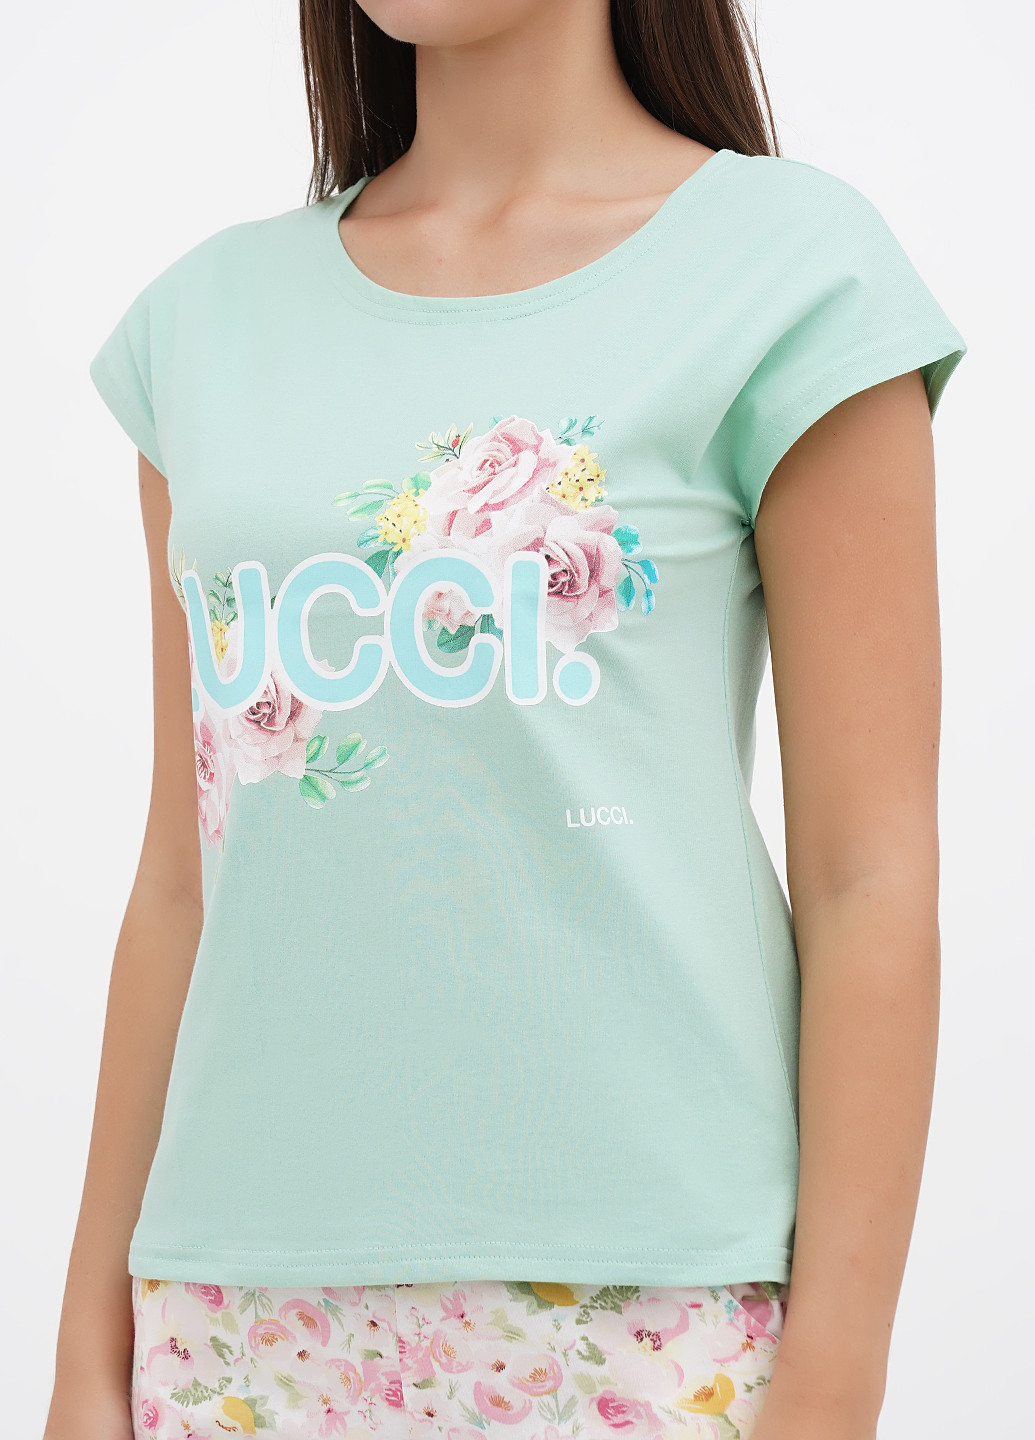 Мятная всесезон пижама (футболка, шорты) футболка + шорты Lucci